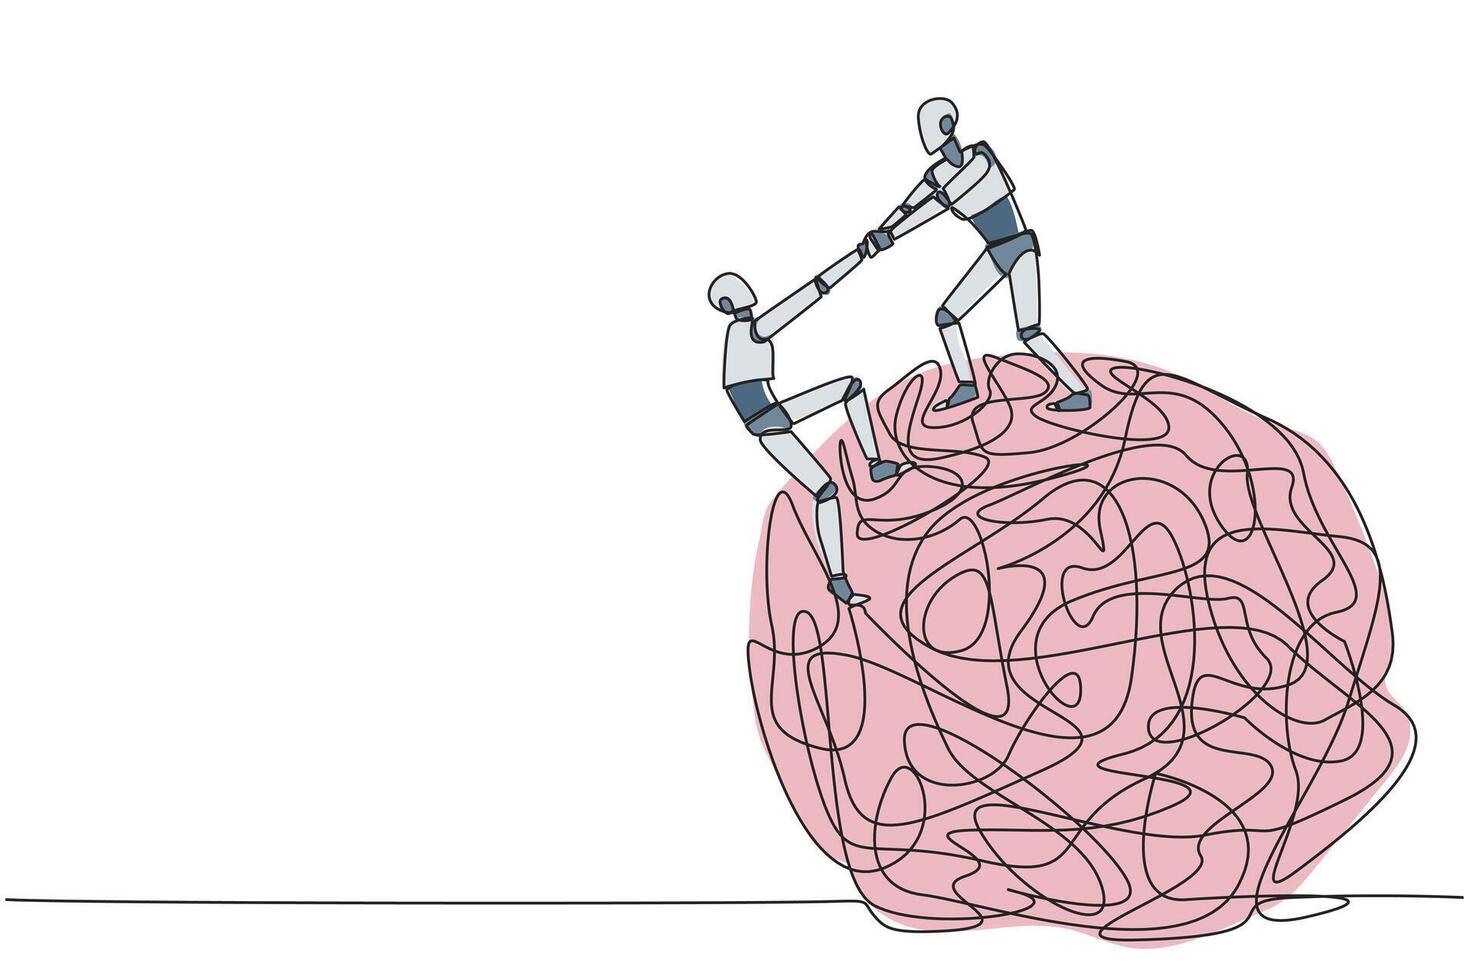 Single einer Linie Zeichnung Clever Roboter hilft Kollege klettert das groß schwer unordentlich Kreis. Zusammenarbeit beseitigt Angst. beseitigen Stress zu Fokus auf Geschäft. kontinuierlich Linie Design Grafik Illustration vektor